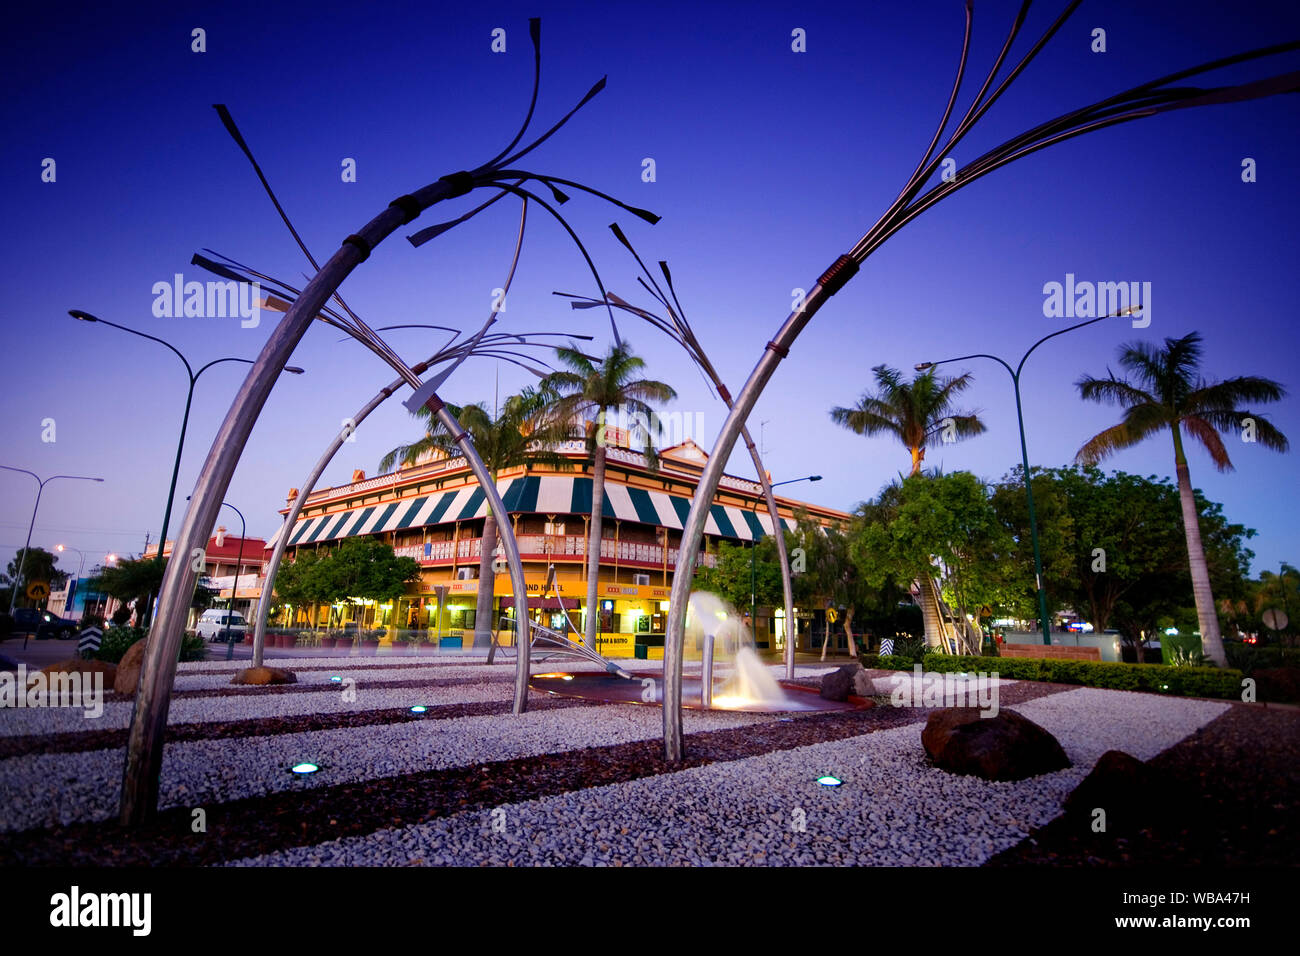 Grand Hotel, de 1885, y el memorial fountain representando la caña de azúcar y la industria de la caña, una parte importante de la historia de la ciudad. Bundaberg, Queensland, Foto de stock